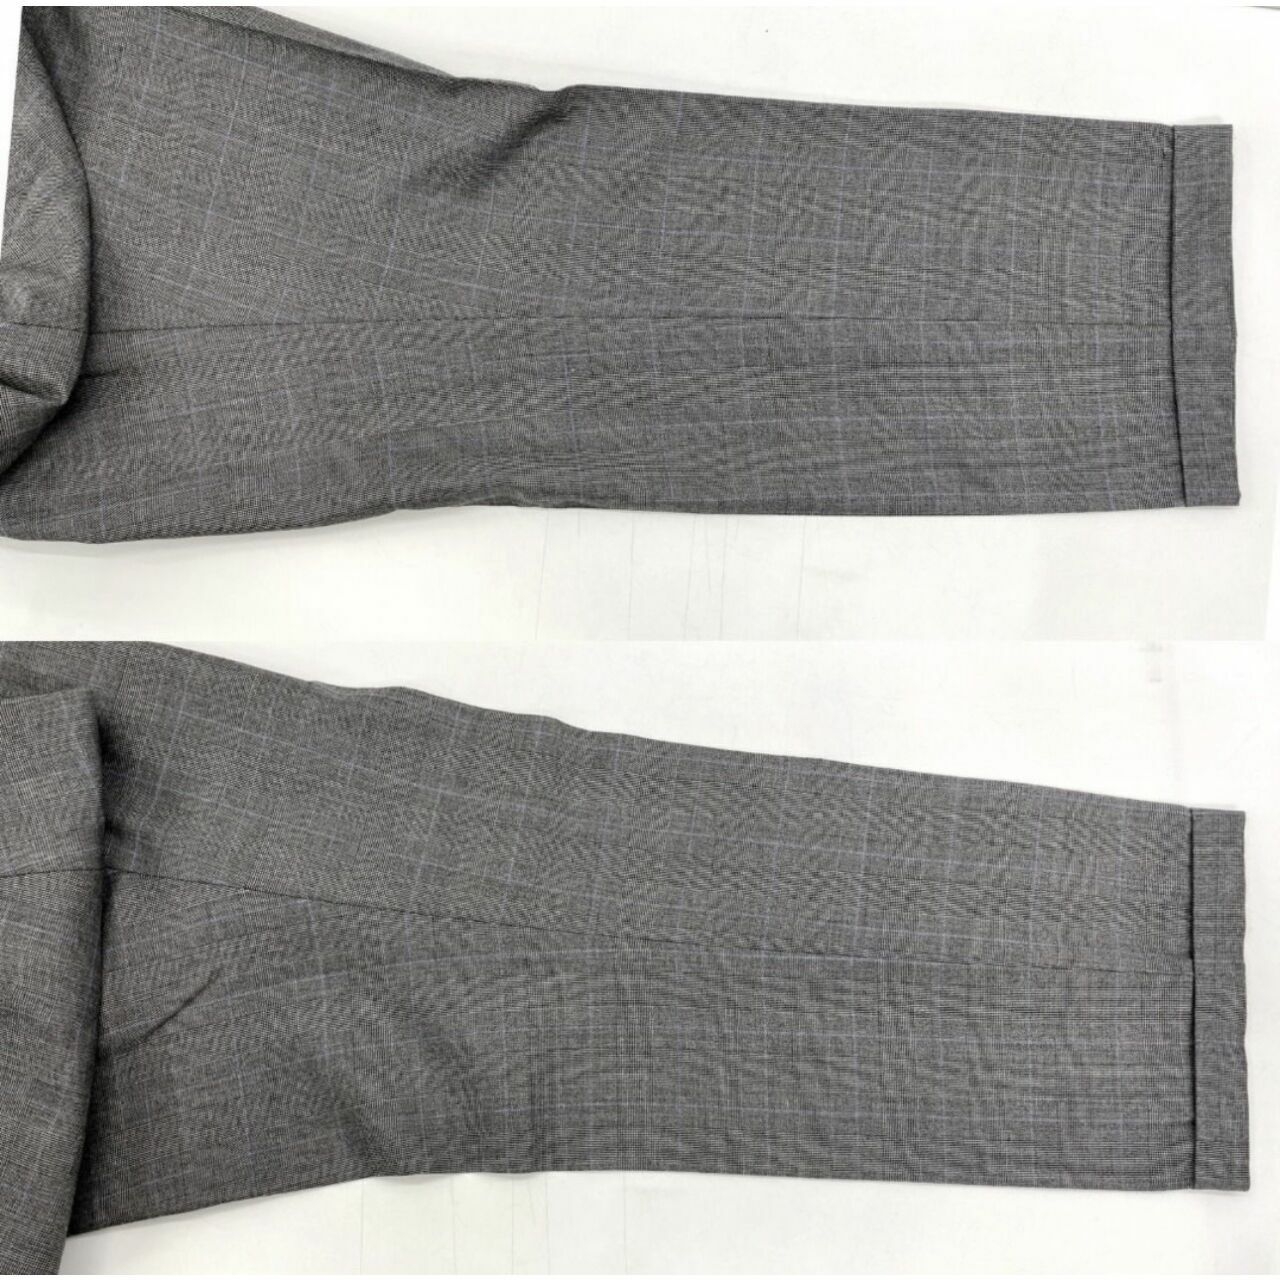 Polo Ralph Lauren Grey Blazer Pants Suit Set Two Piece